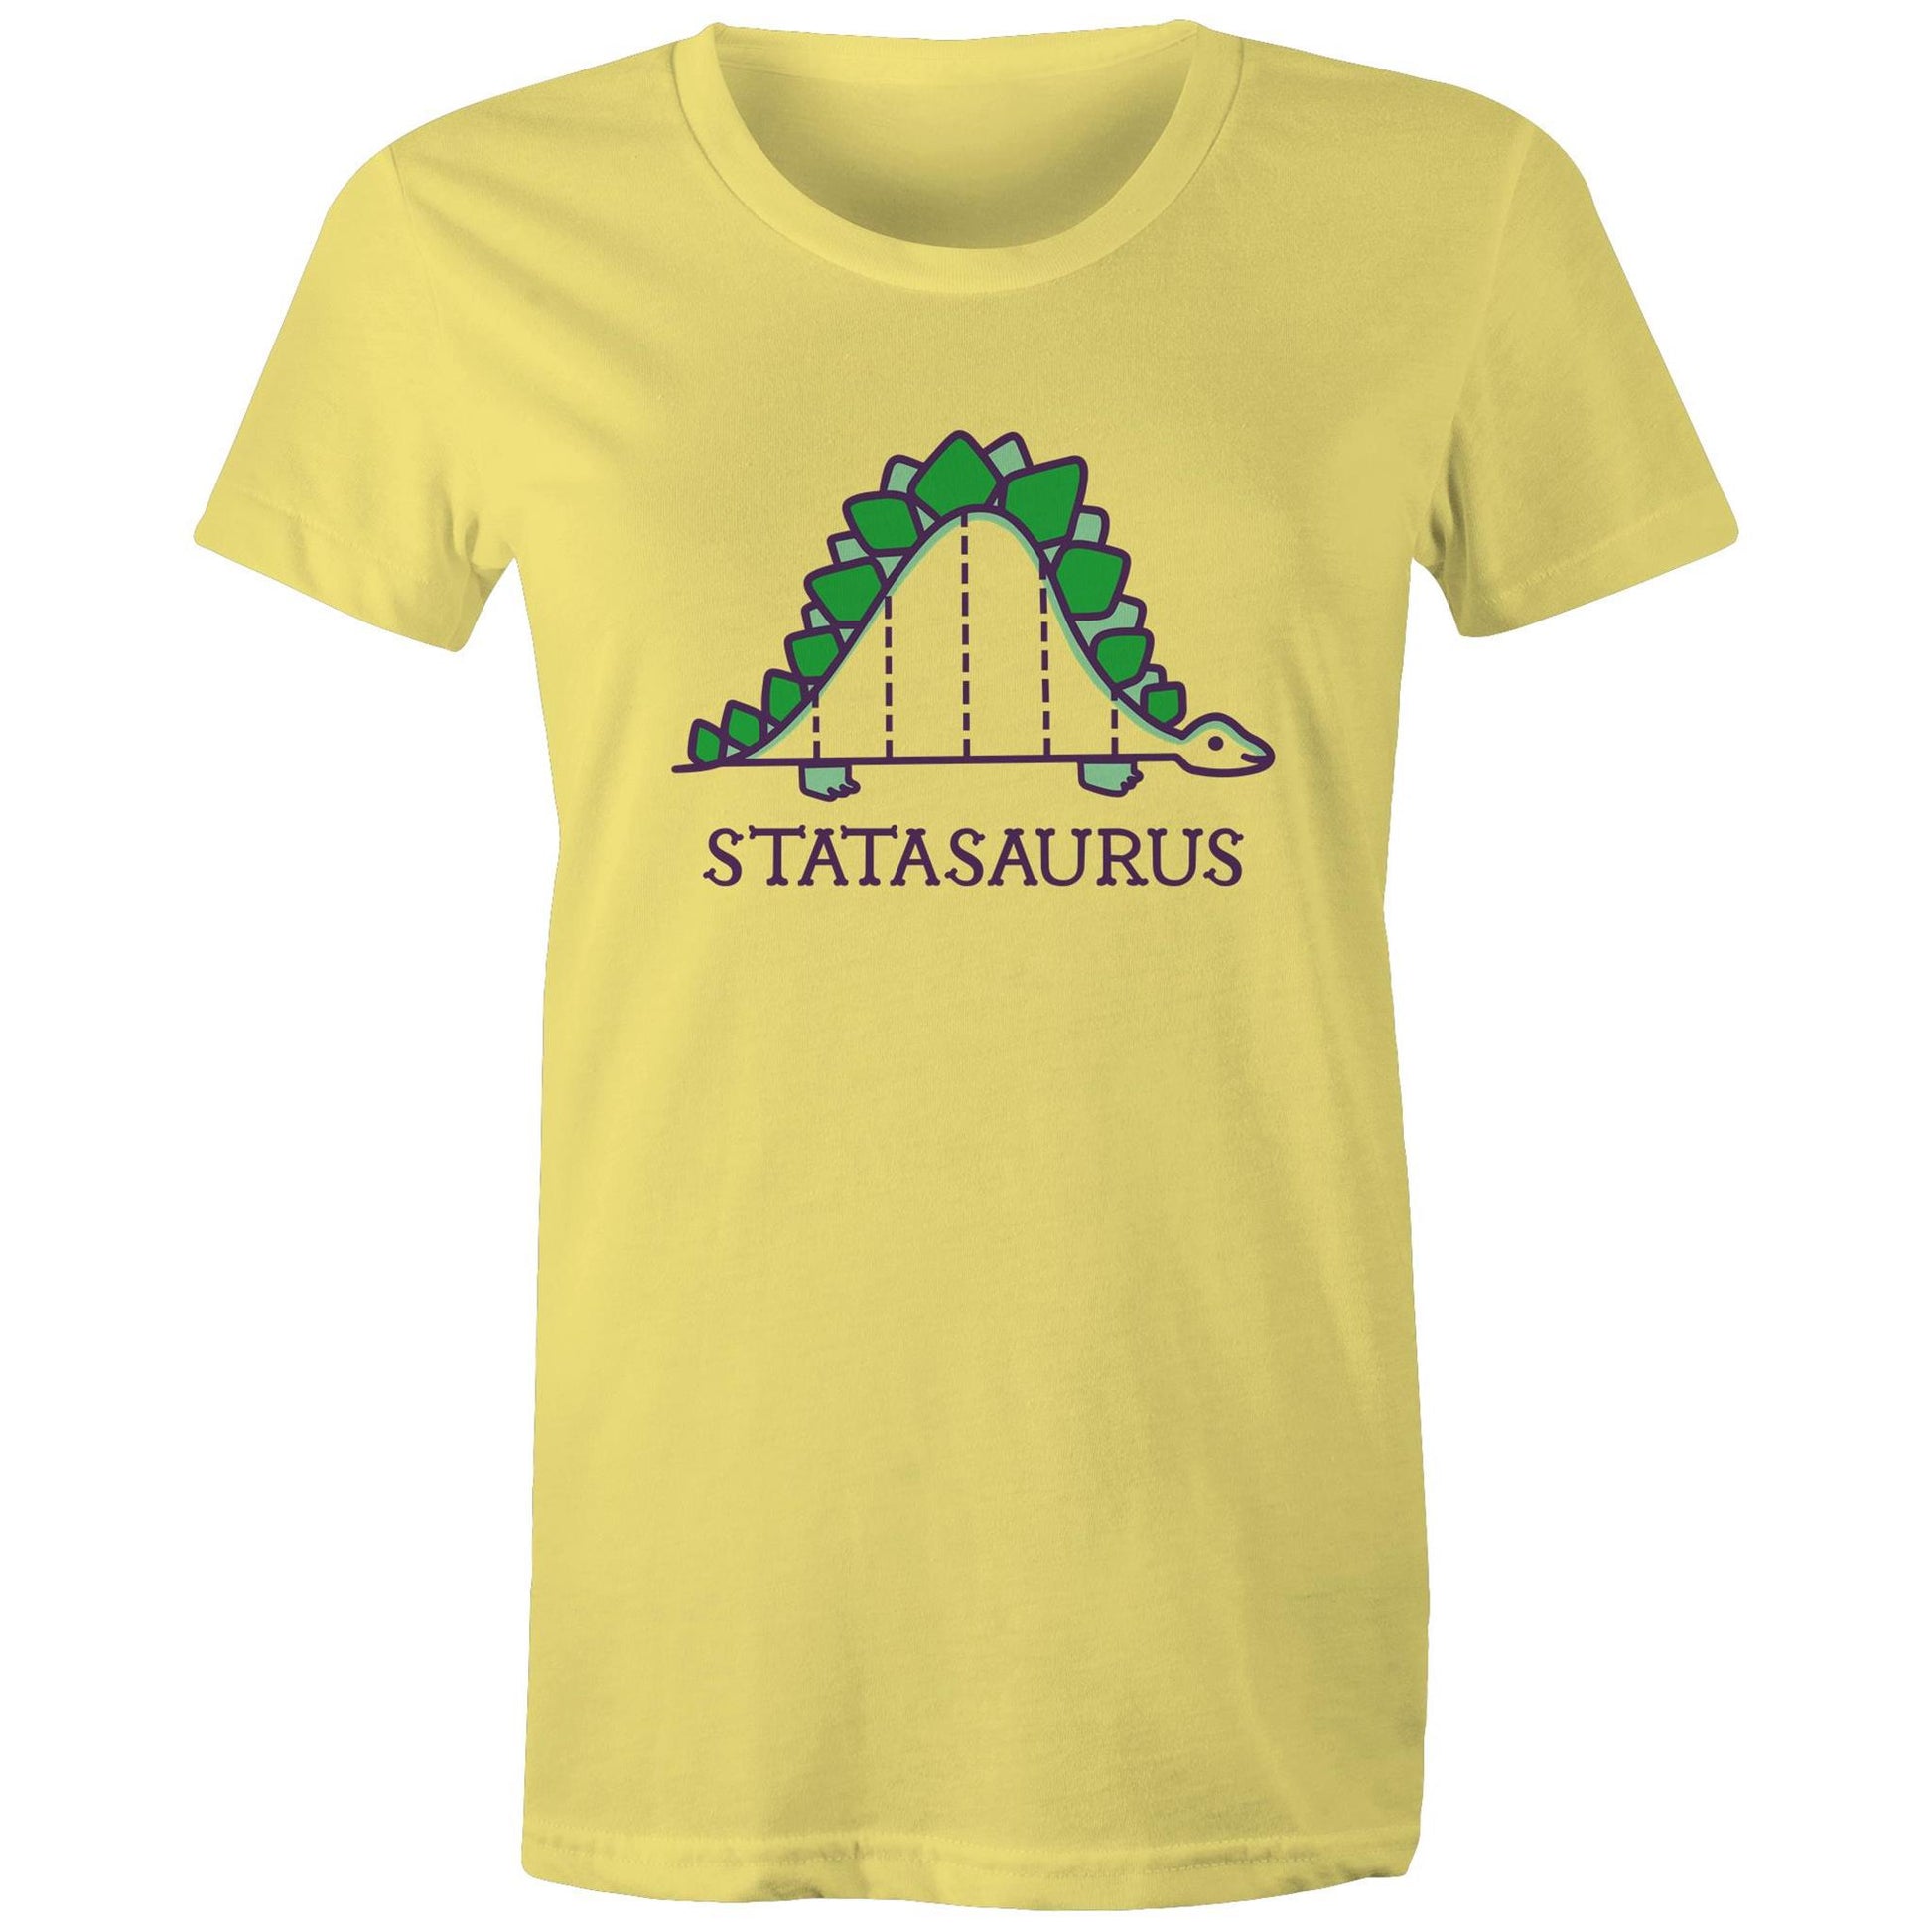 Statasaurus - Womens T-shirt Yellow Womens T-shirt animal Maths Science